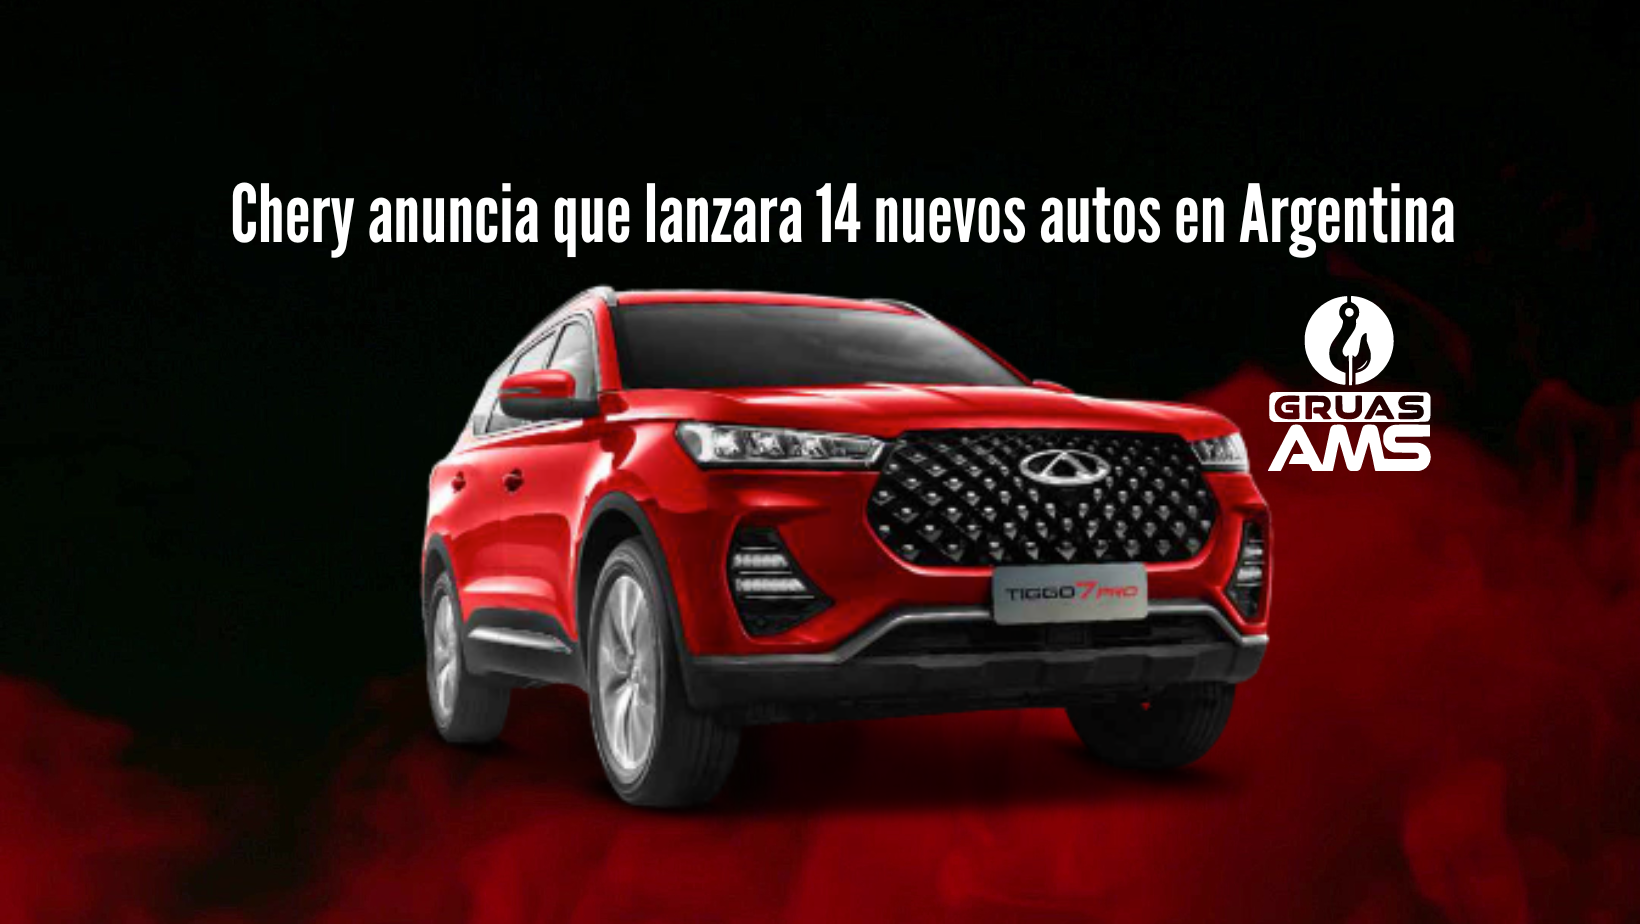 Chery anuncia que lanzara 14 nuevos autos en Argentina